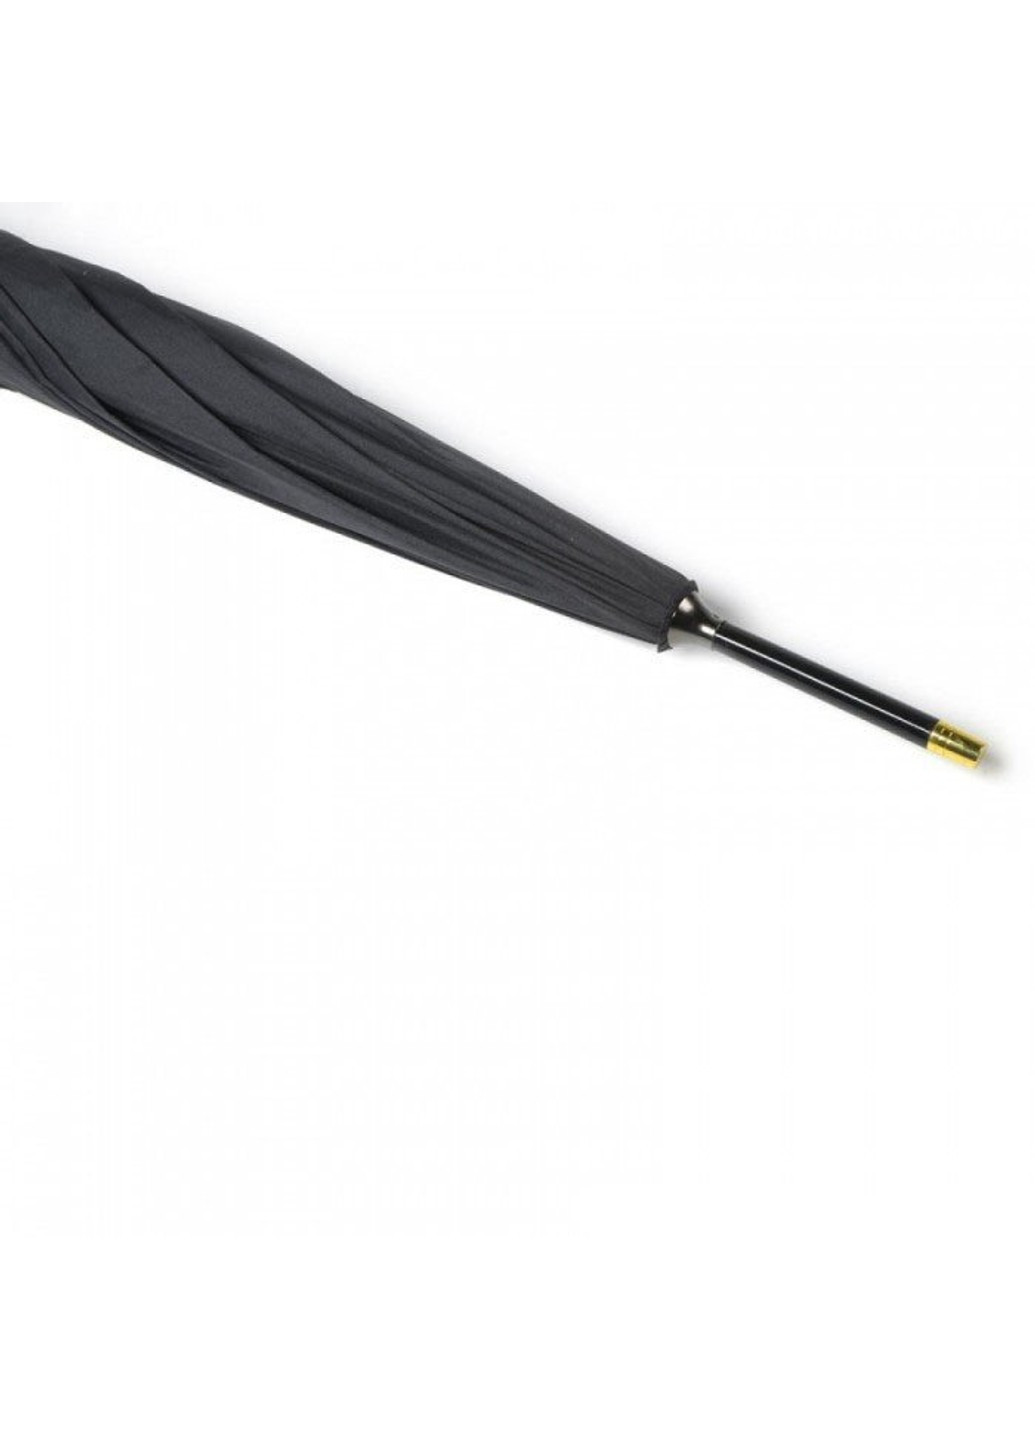 Мужской механический зонт-трость Minister G809 - Black (Черный) Fulton (262087065)